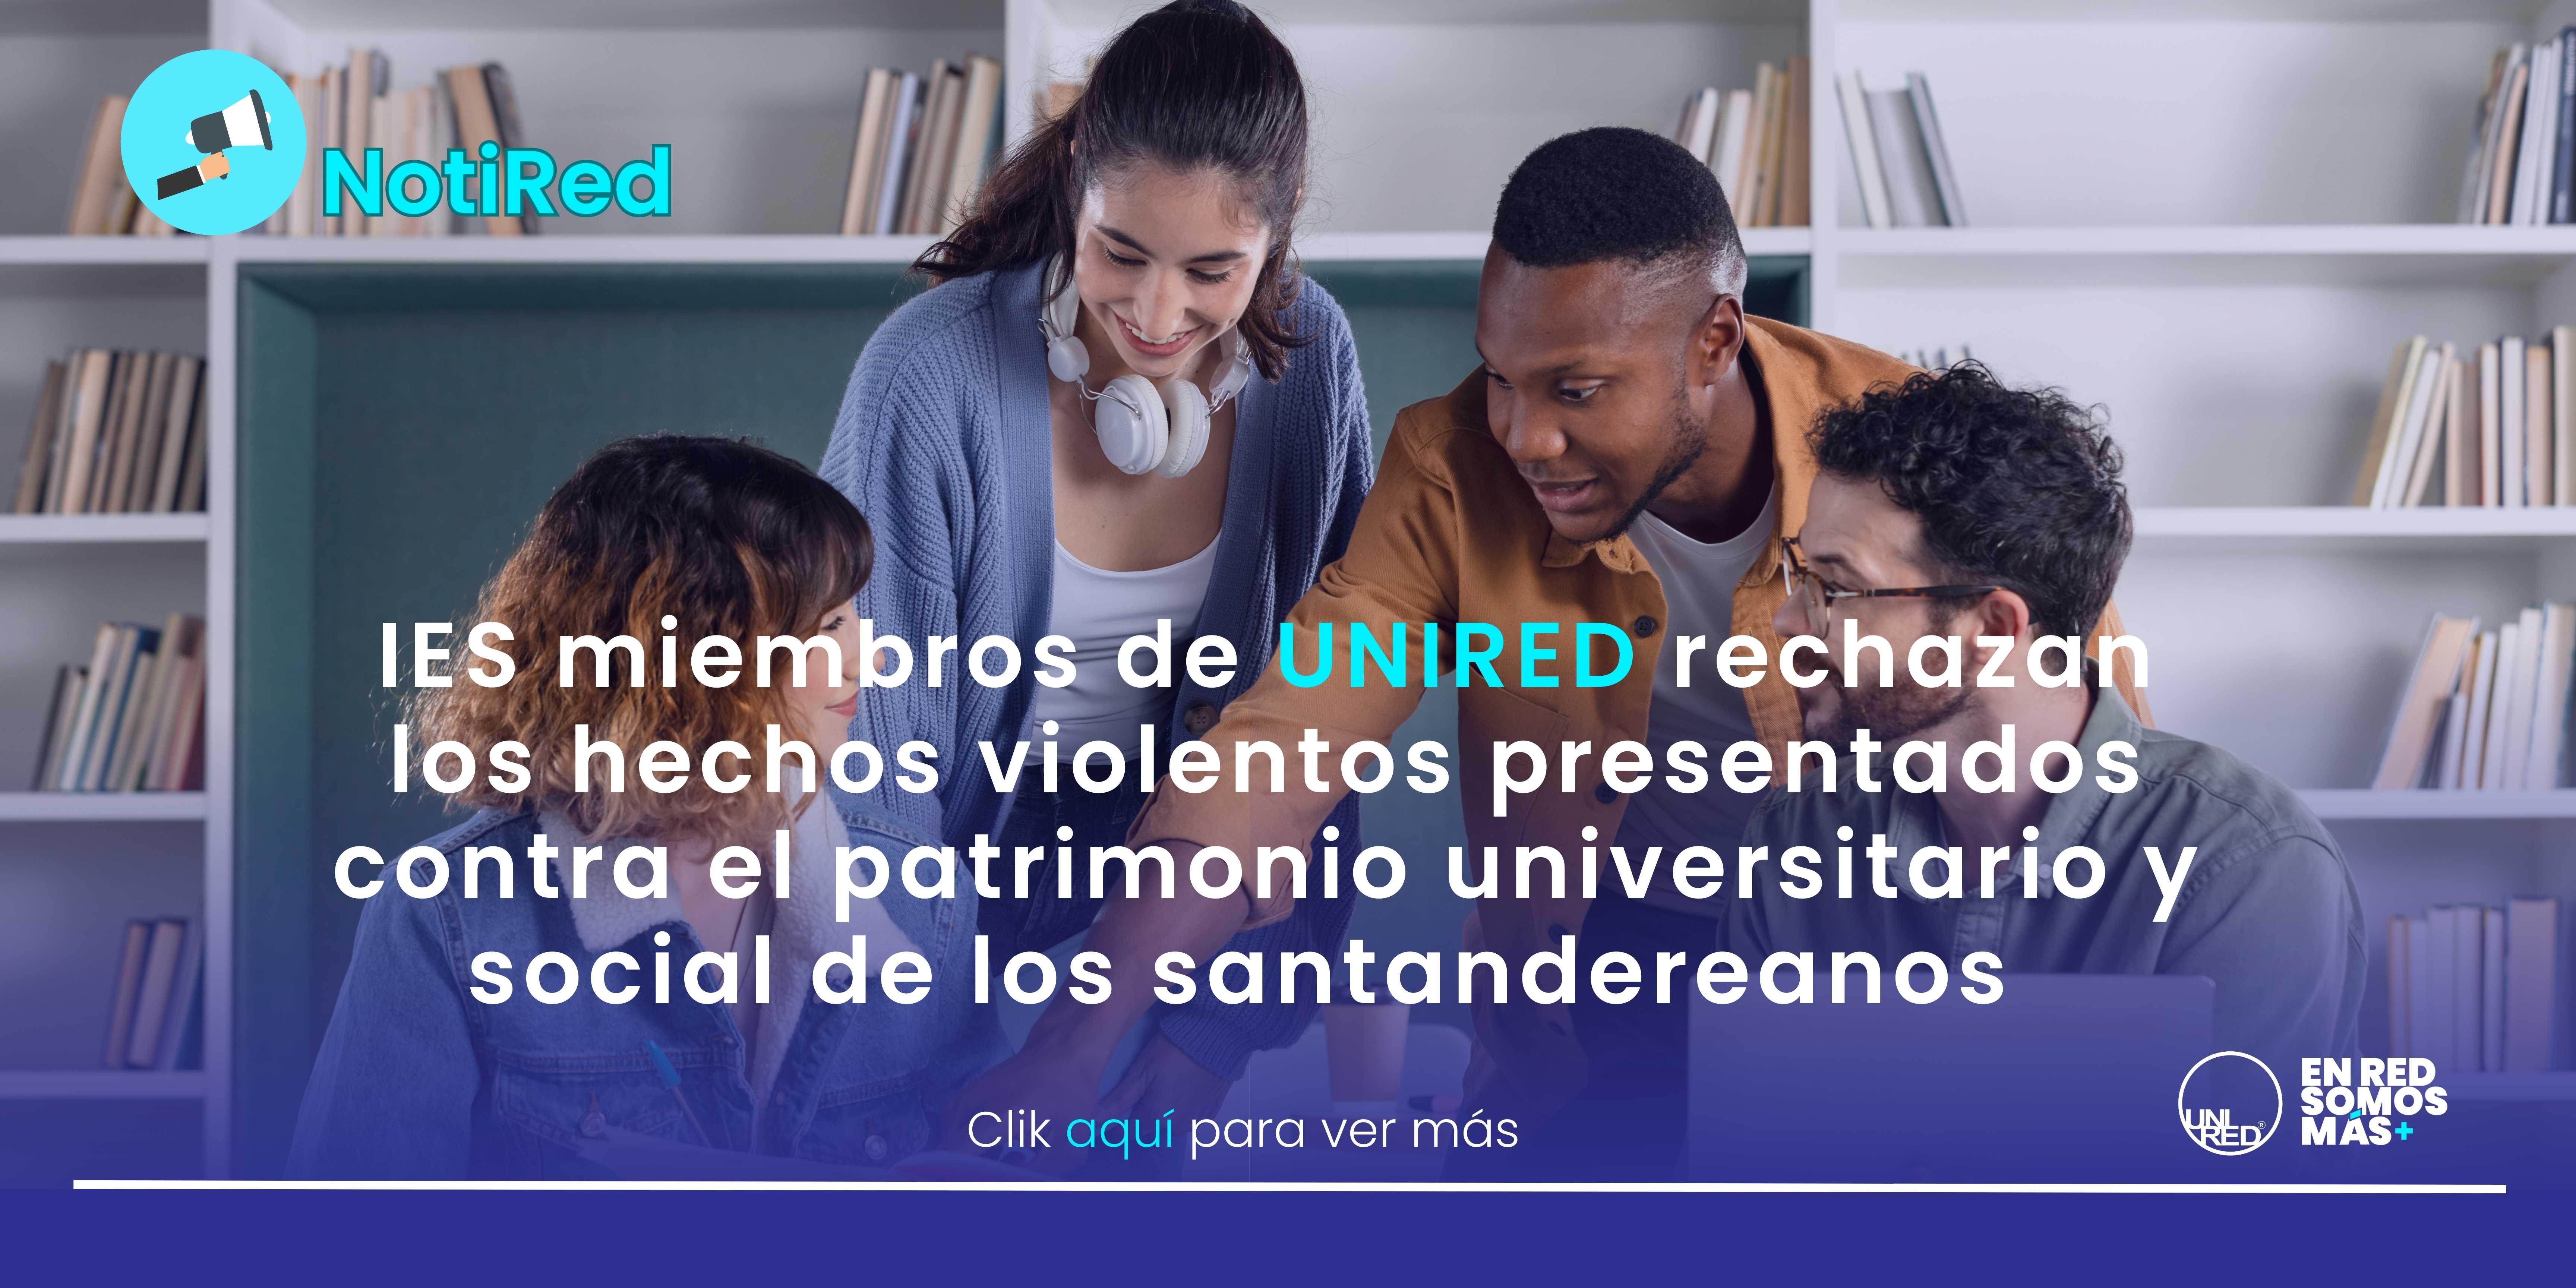 IES miembros de UNIRED rechazan los hechos violentos presentados contra el patrimonio universitario y social de los santandereanos 2